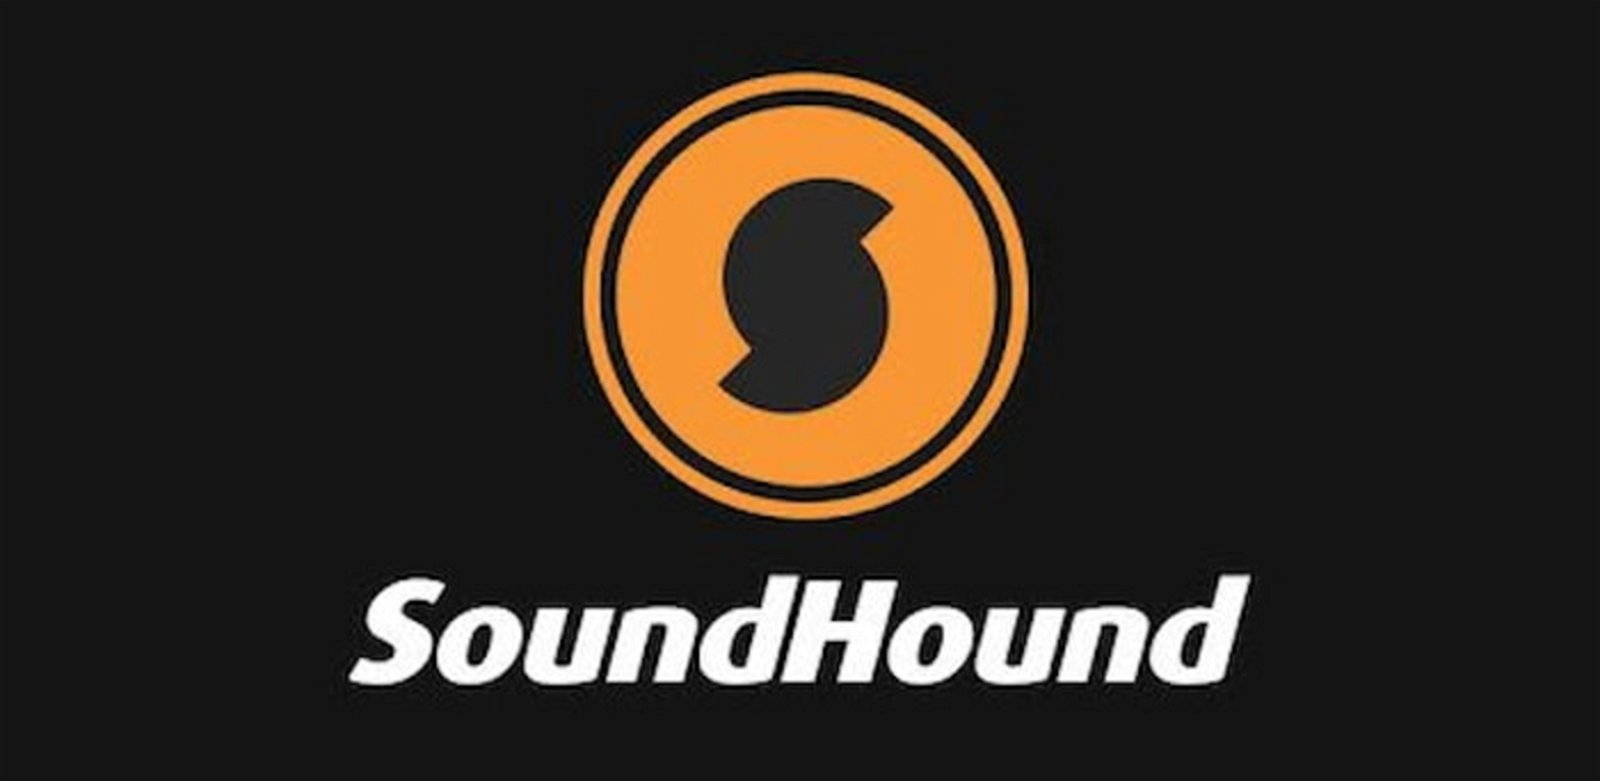 SoundHound te permitirá identificar canciones y es una aplicación gratuita